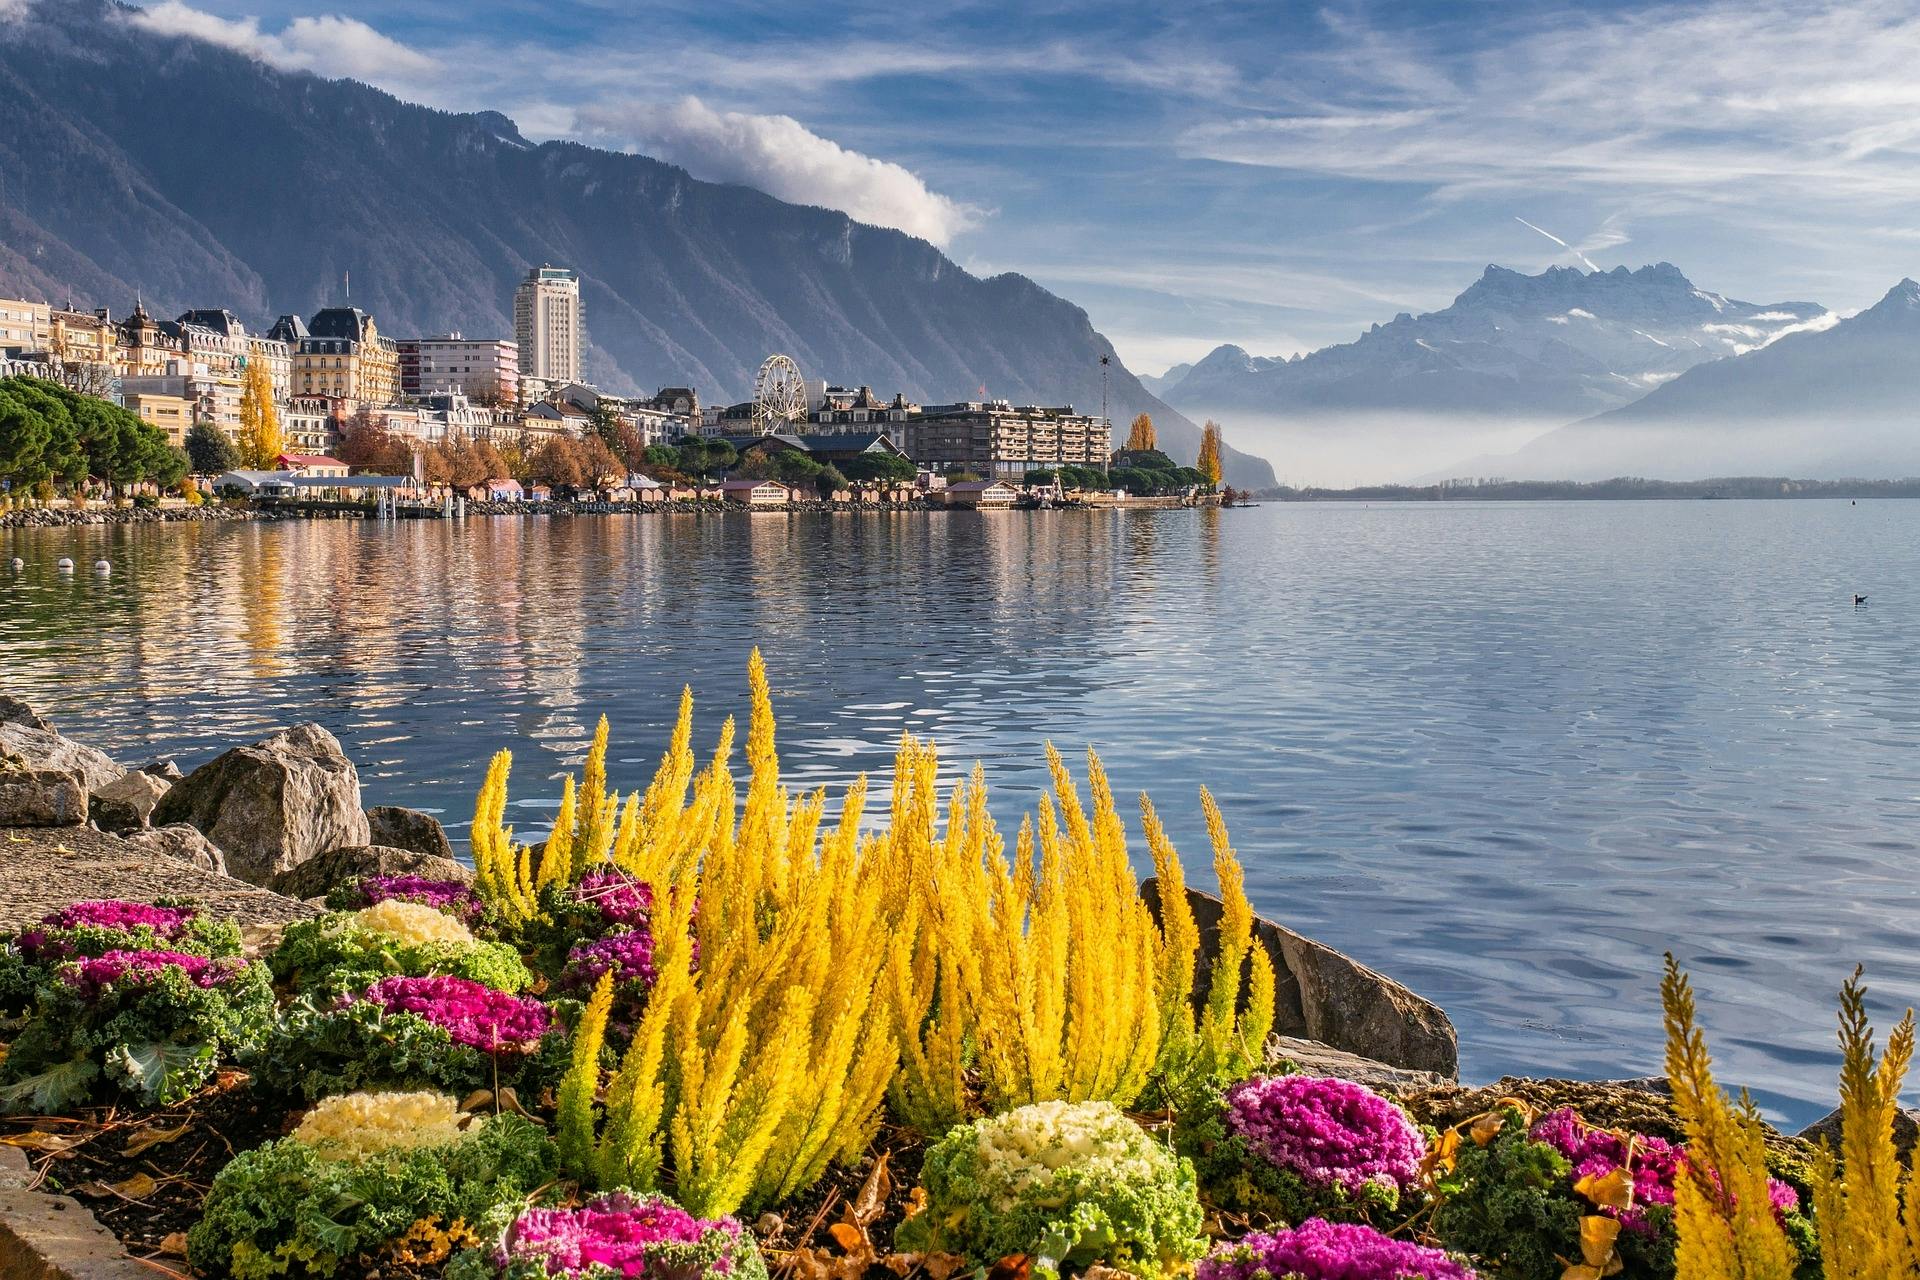 Visite à pied des sites les plus photogéniques de Montreux avec un local